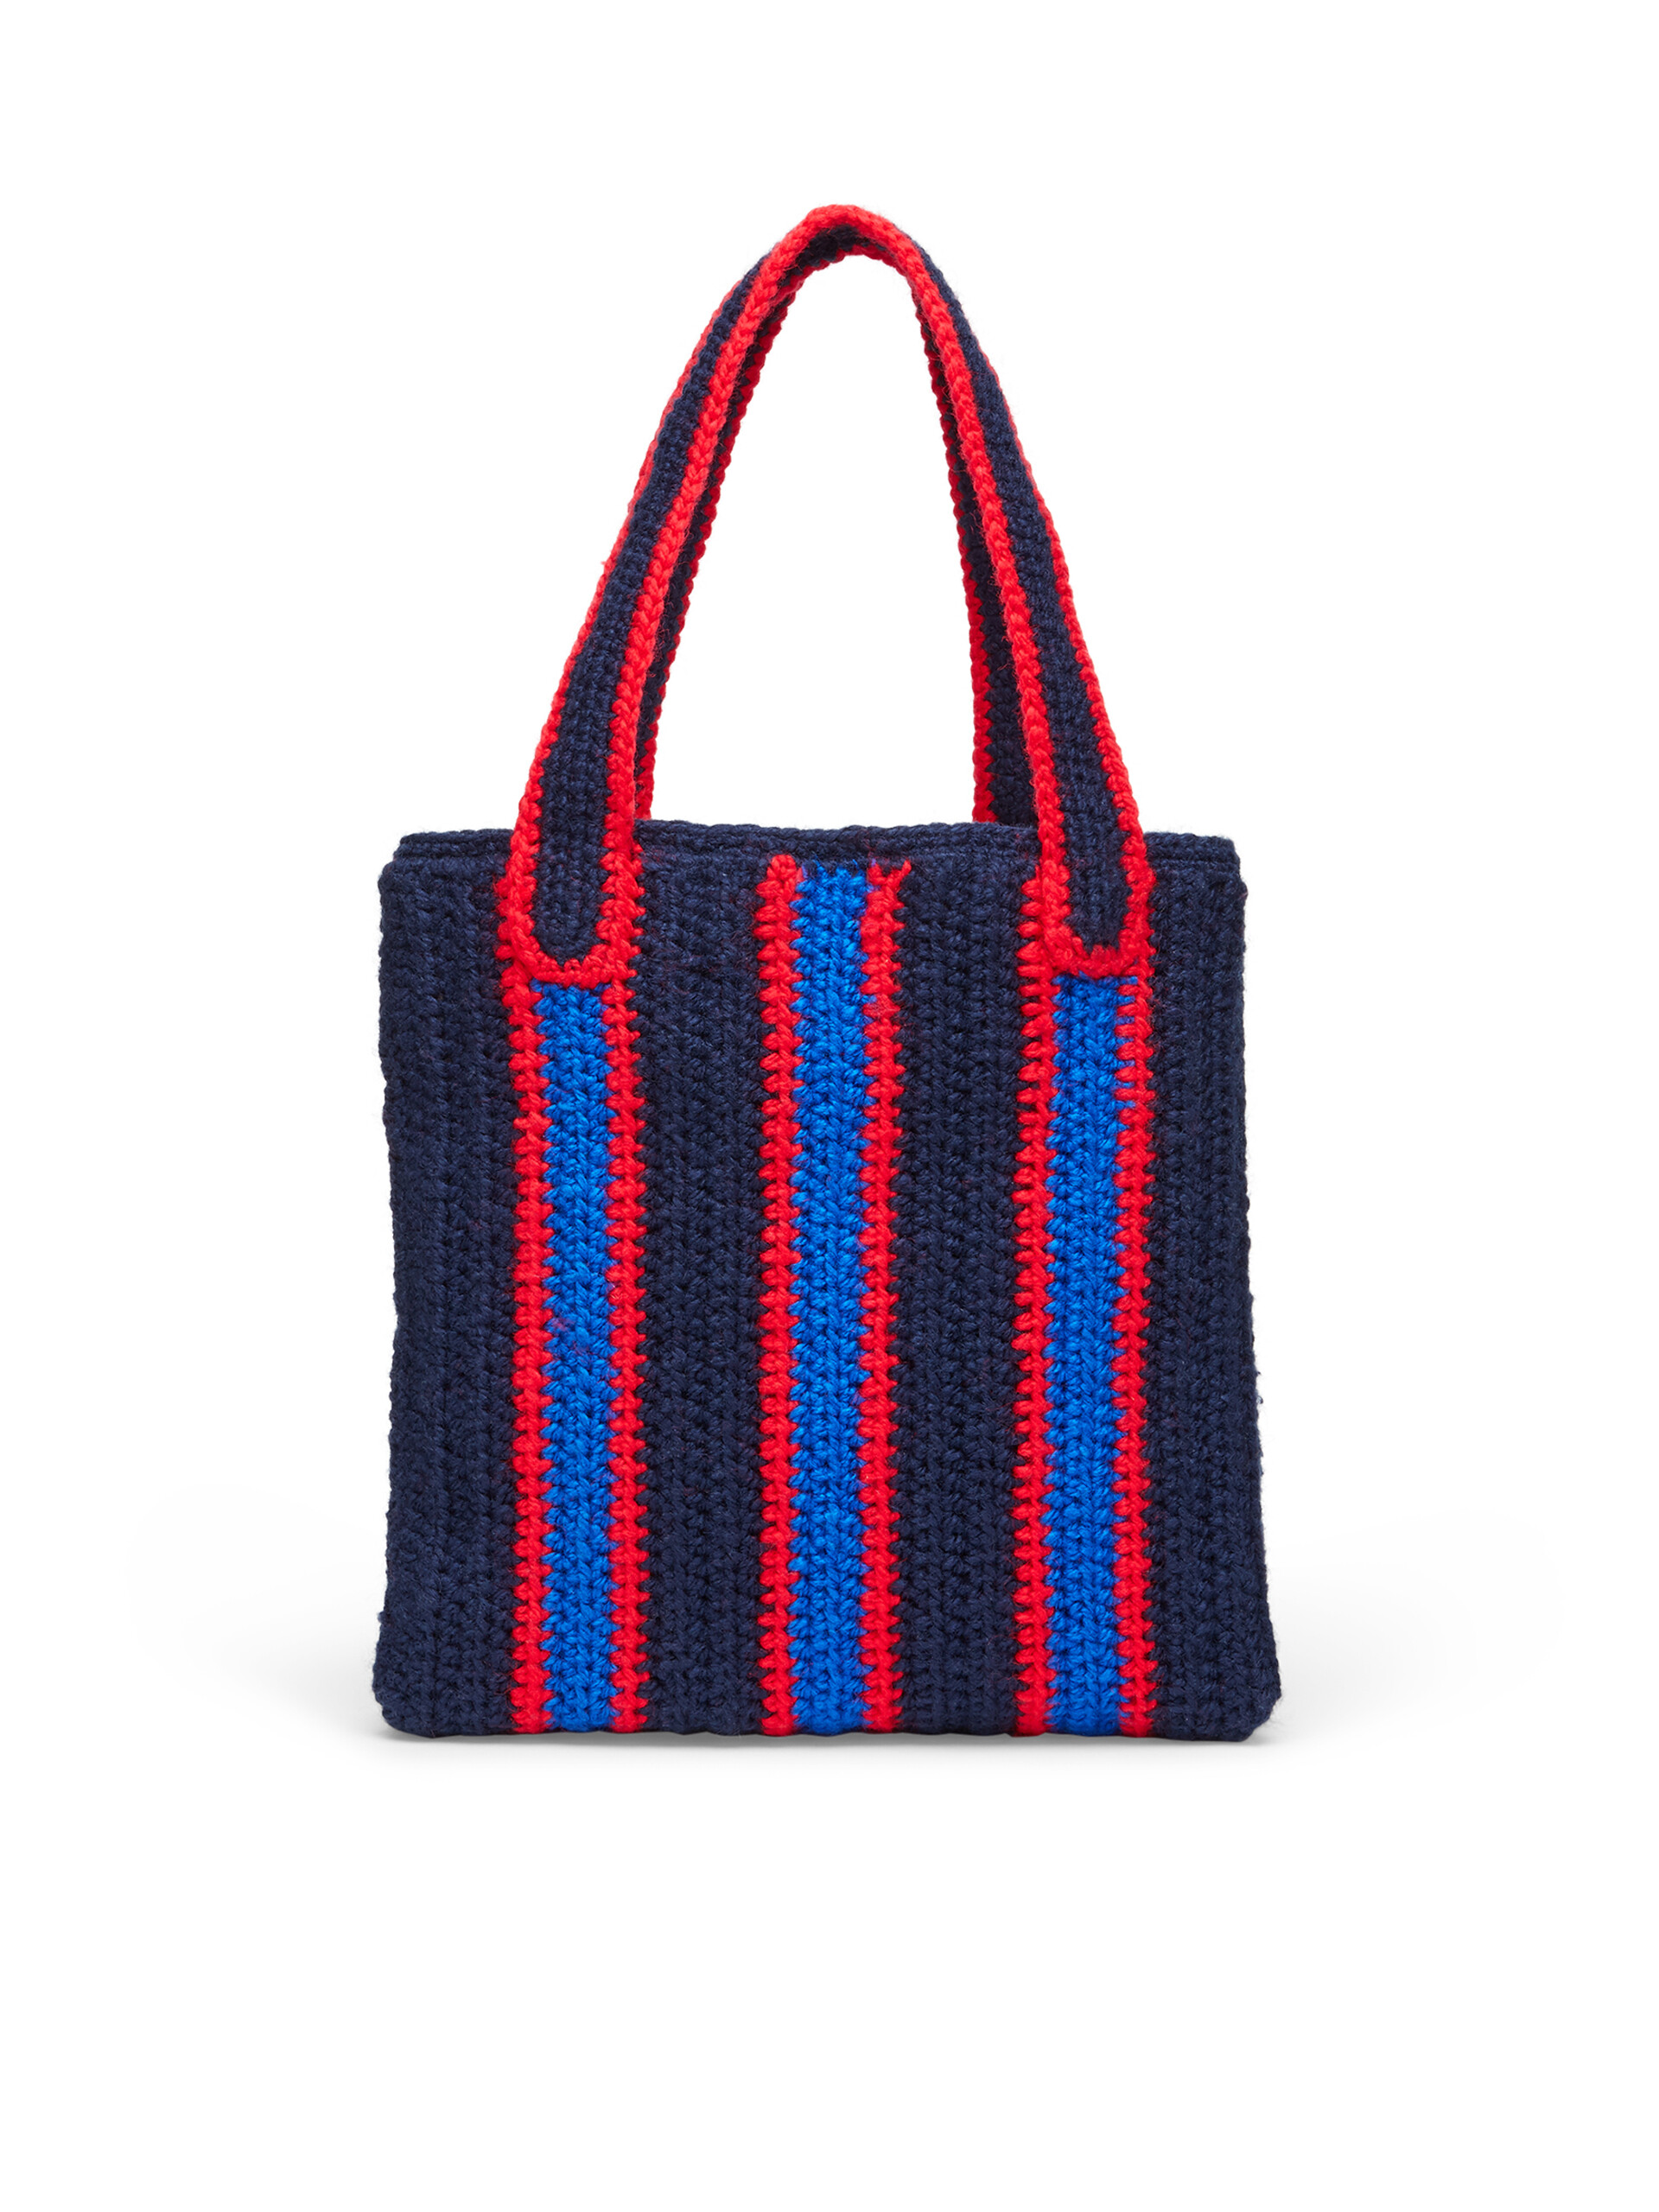 Borsa shopping MARNI MARKET in crochet con motivo rigato in blu rosso e bluette - Borse - Image 3